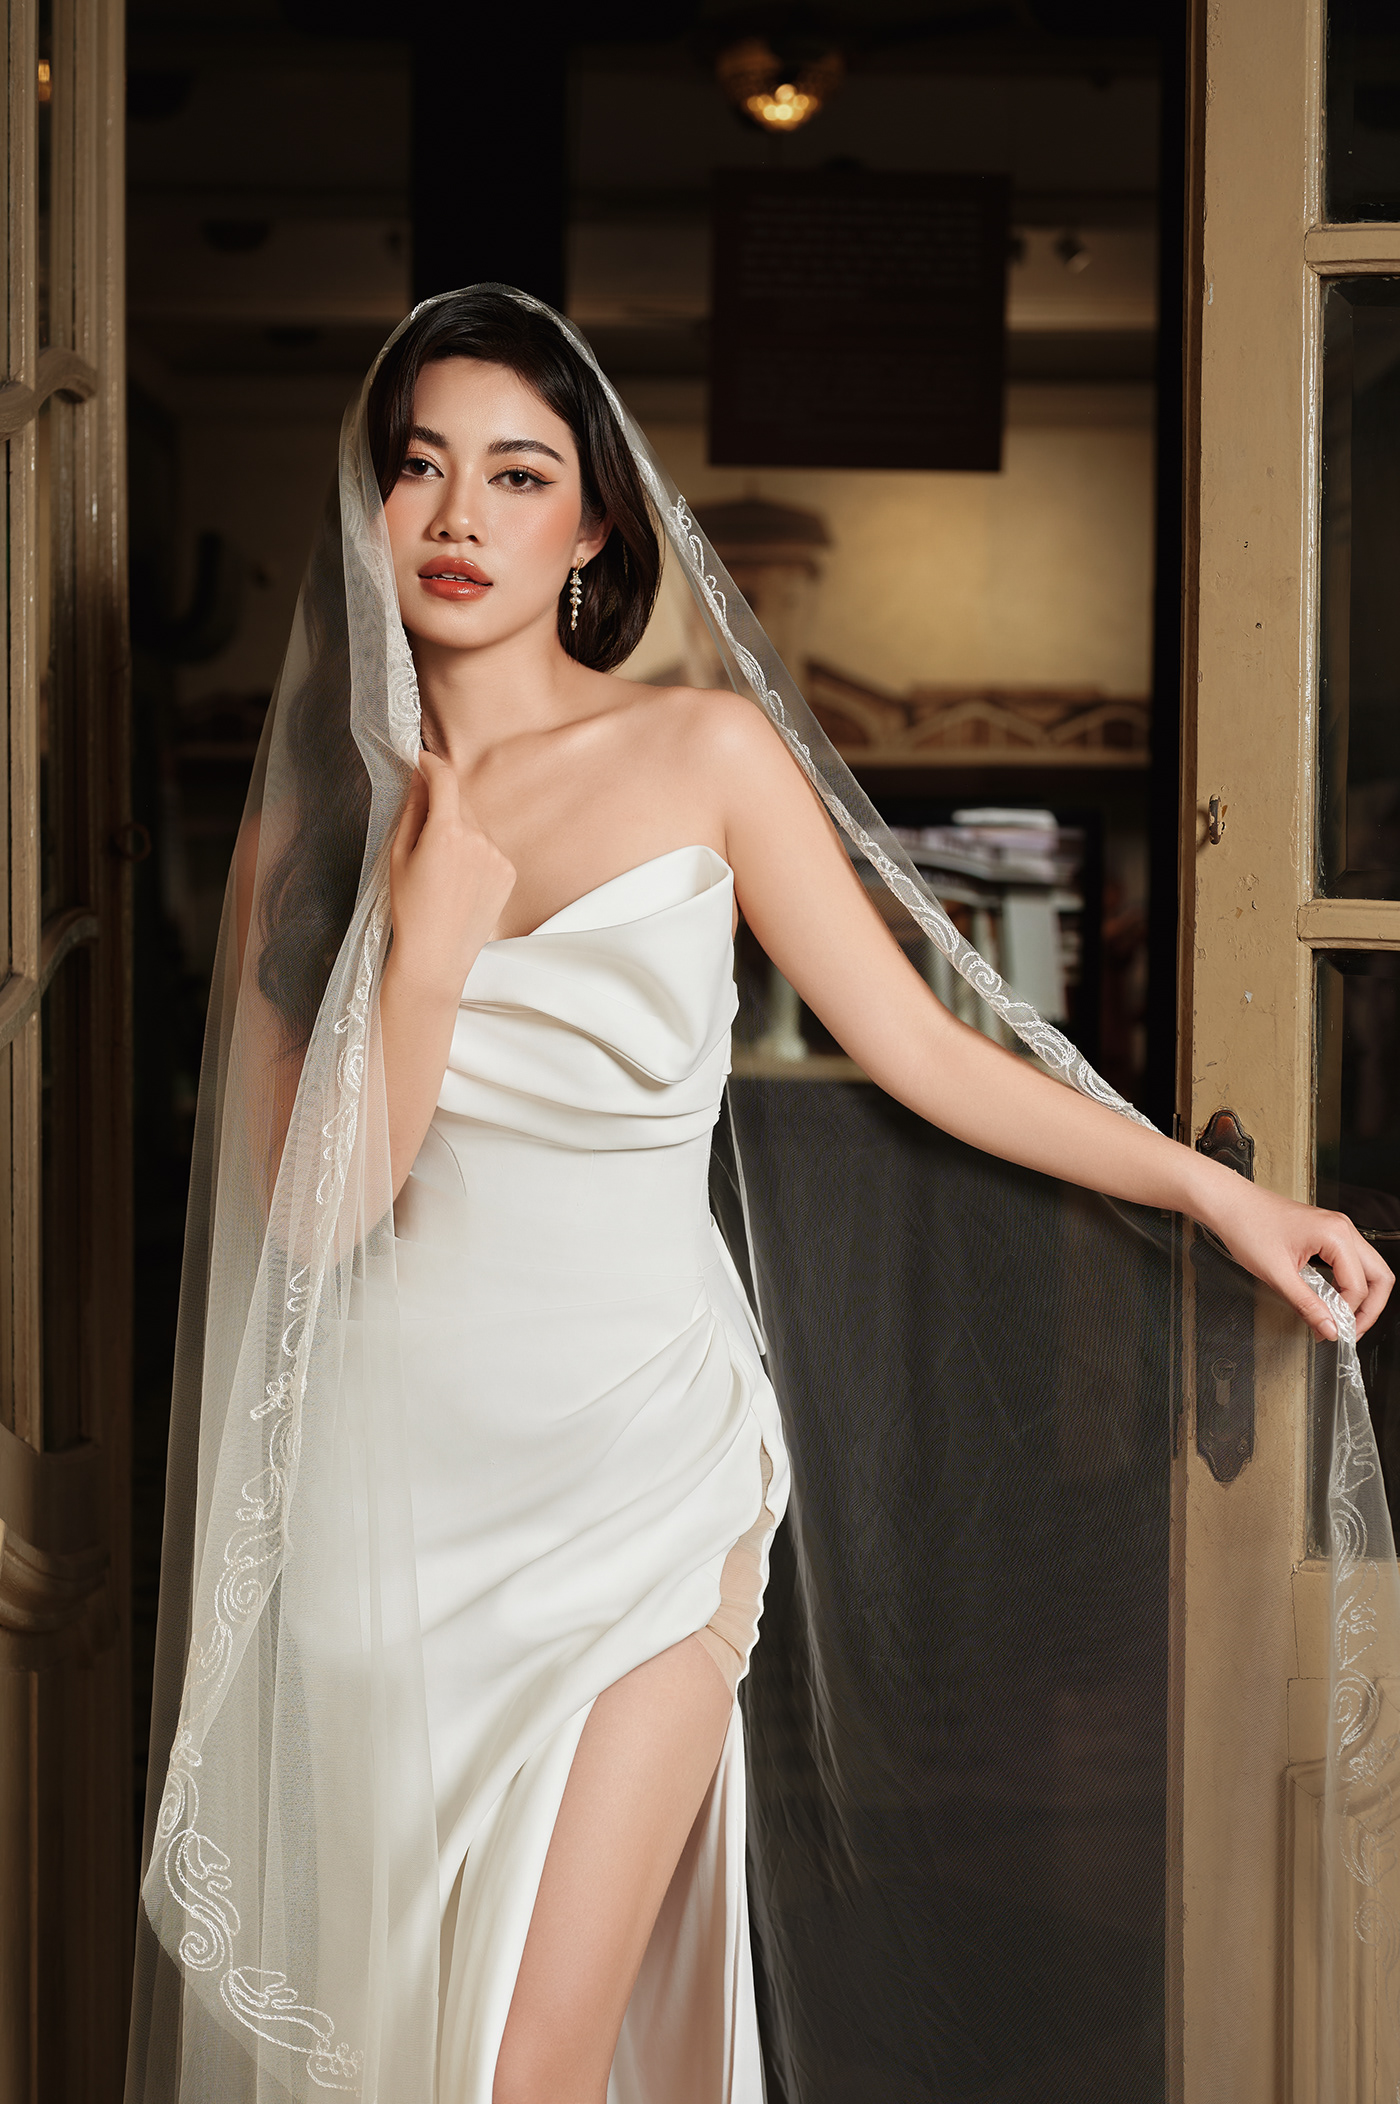 WEDDING DRESS bride Photography  Fashion  photoshoot stylist model Weddings weddingideas pose ideas